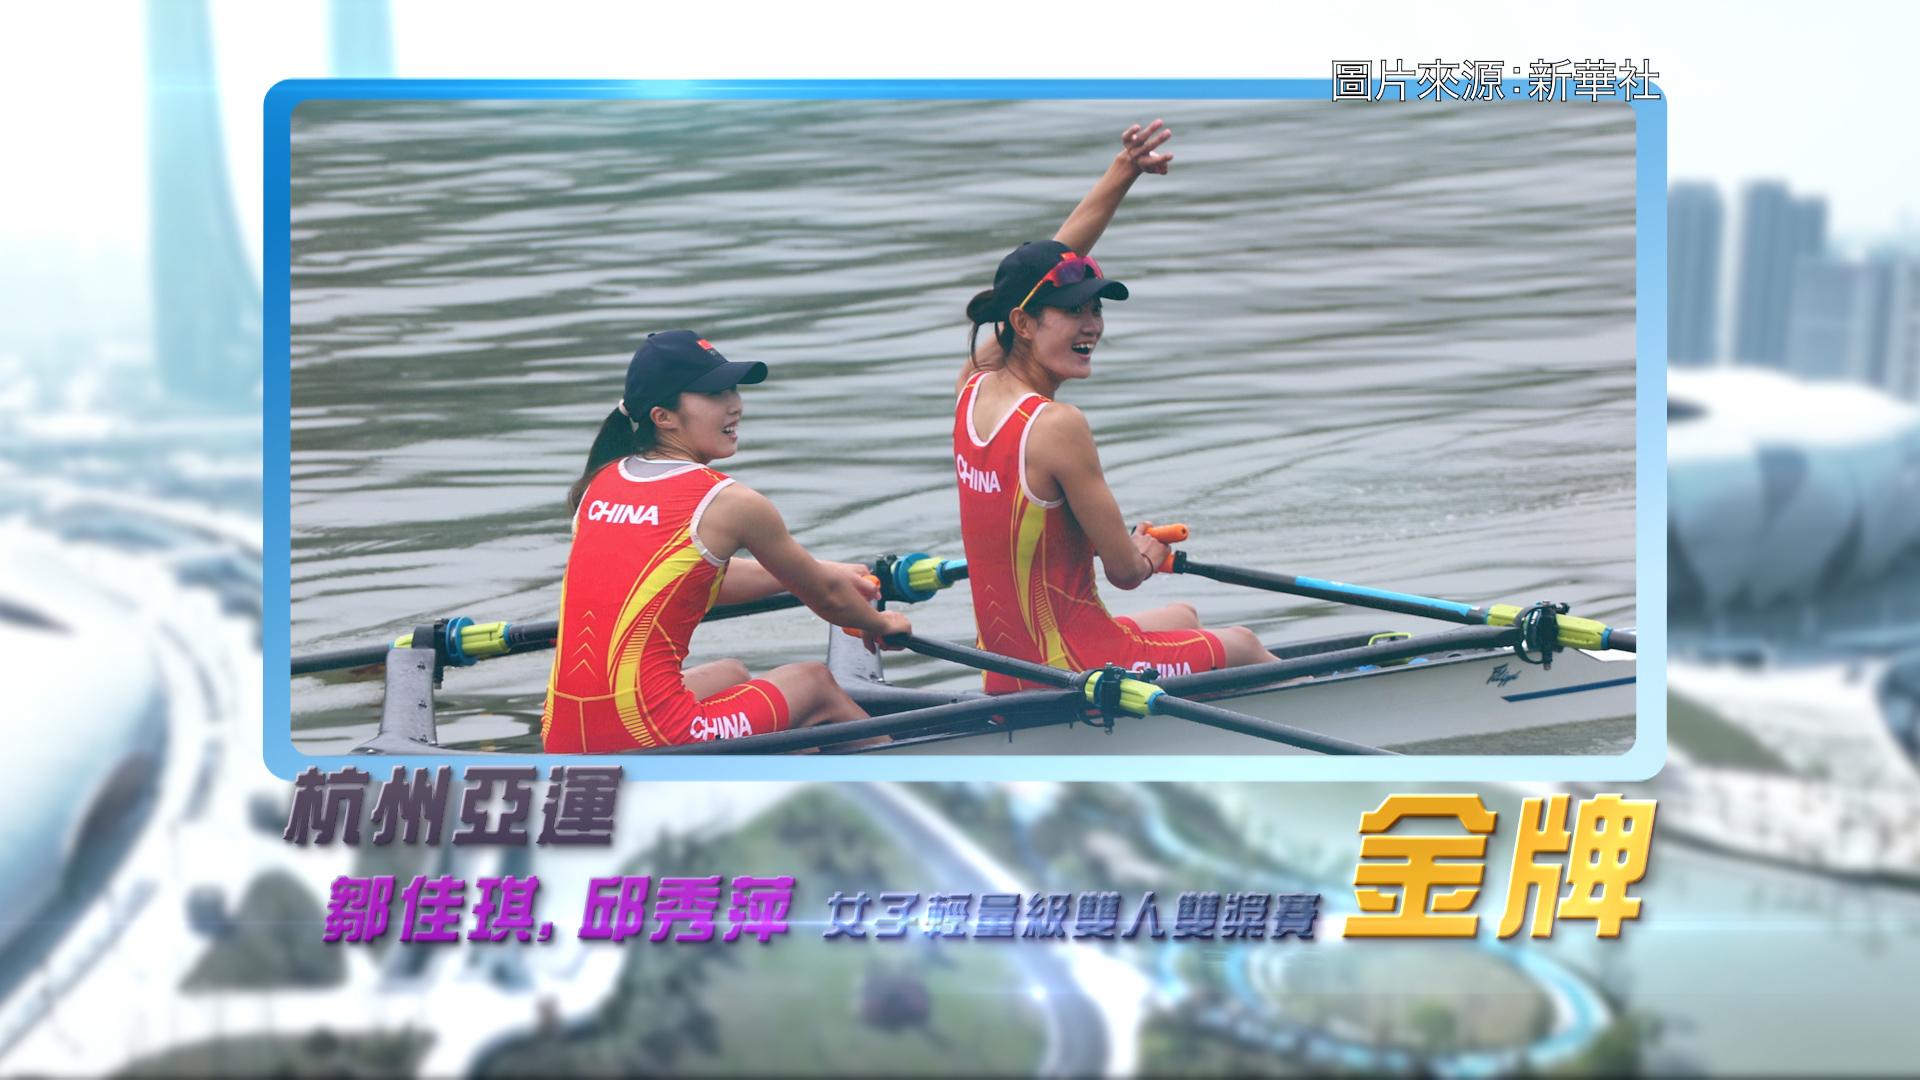 恭喜国家赛艇代表邹佳琪、邱秀萍于杭州亚运为国家队赢得亚运首面金牌
